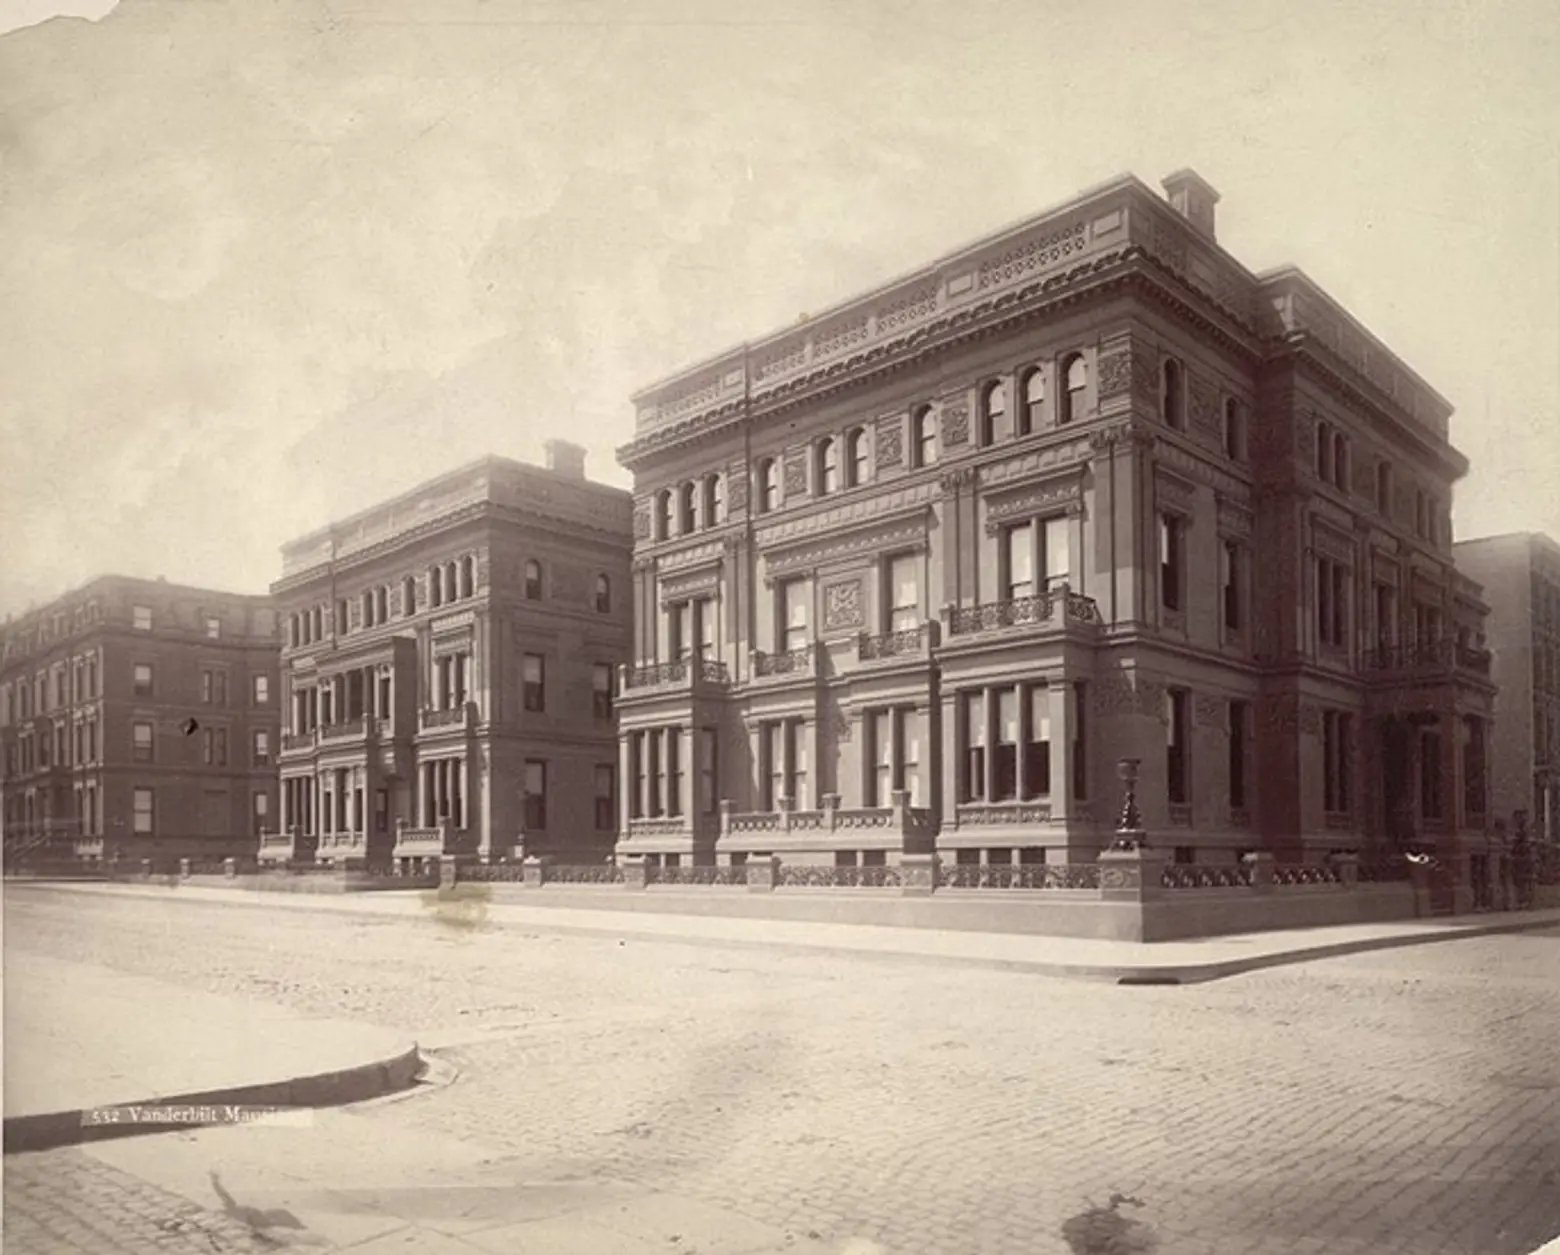 Vanderbilt Triple Palace-William Henry Vanderbilt-5th Avenue-NYC